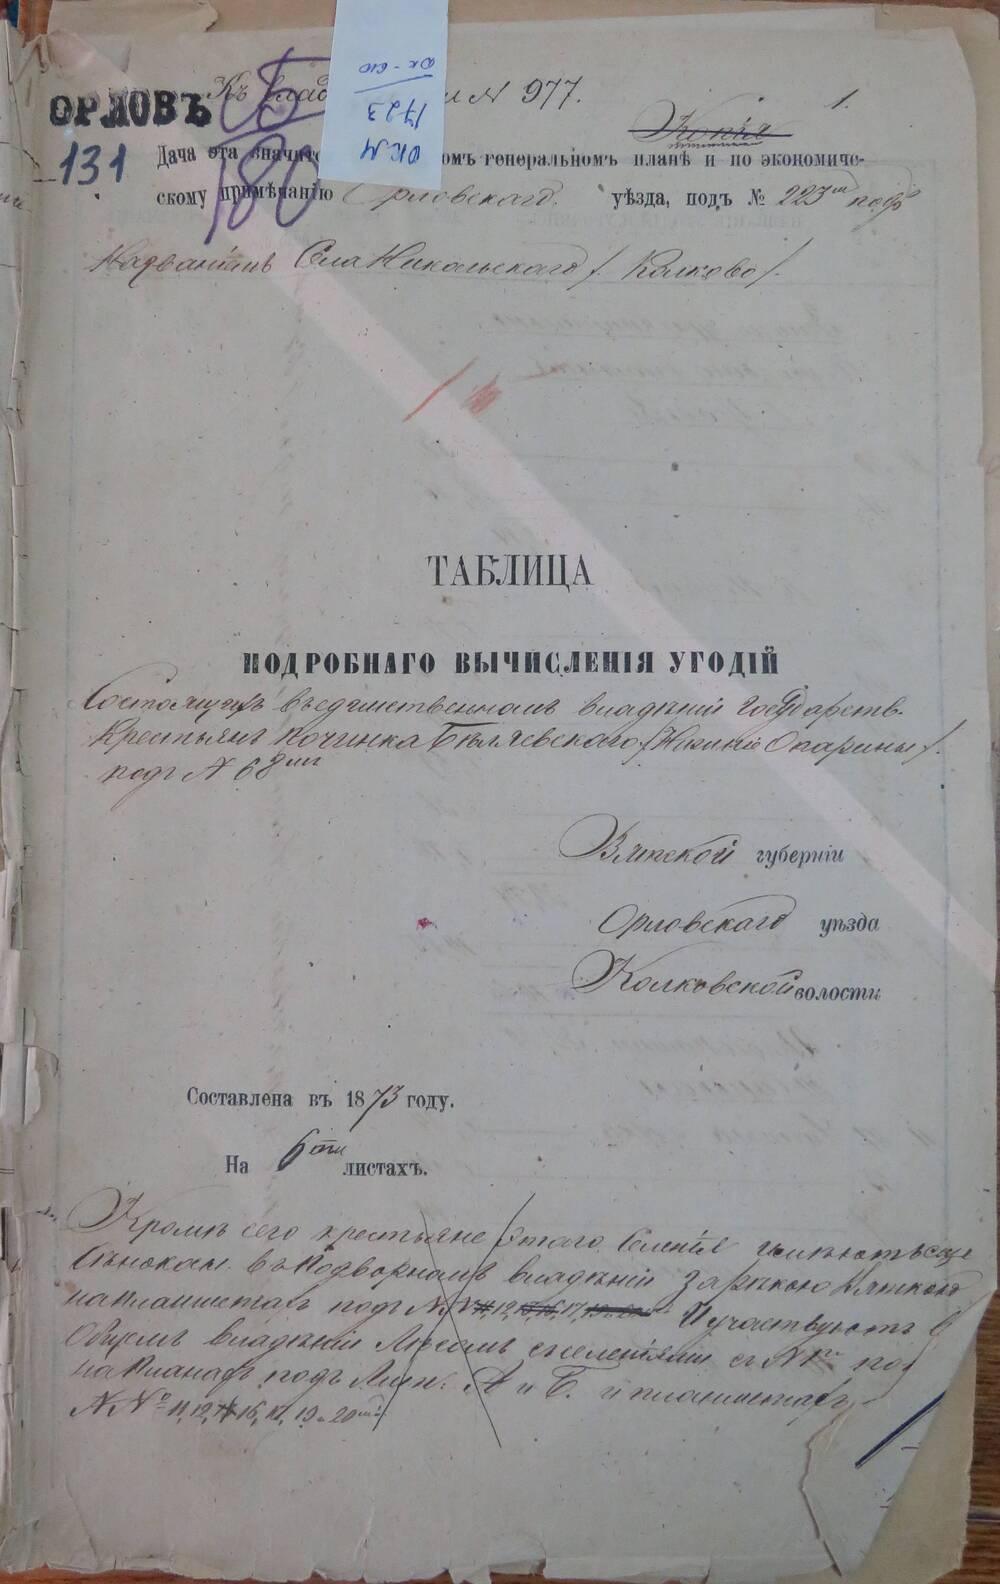 Таблица подробного вычисления угодий  к записи № 977 Вятской губернии, Орловского уезда, Колковской волости.
Составлена в 1873 году.